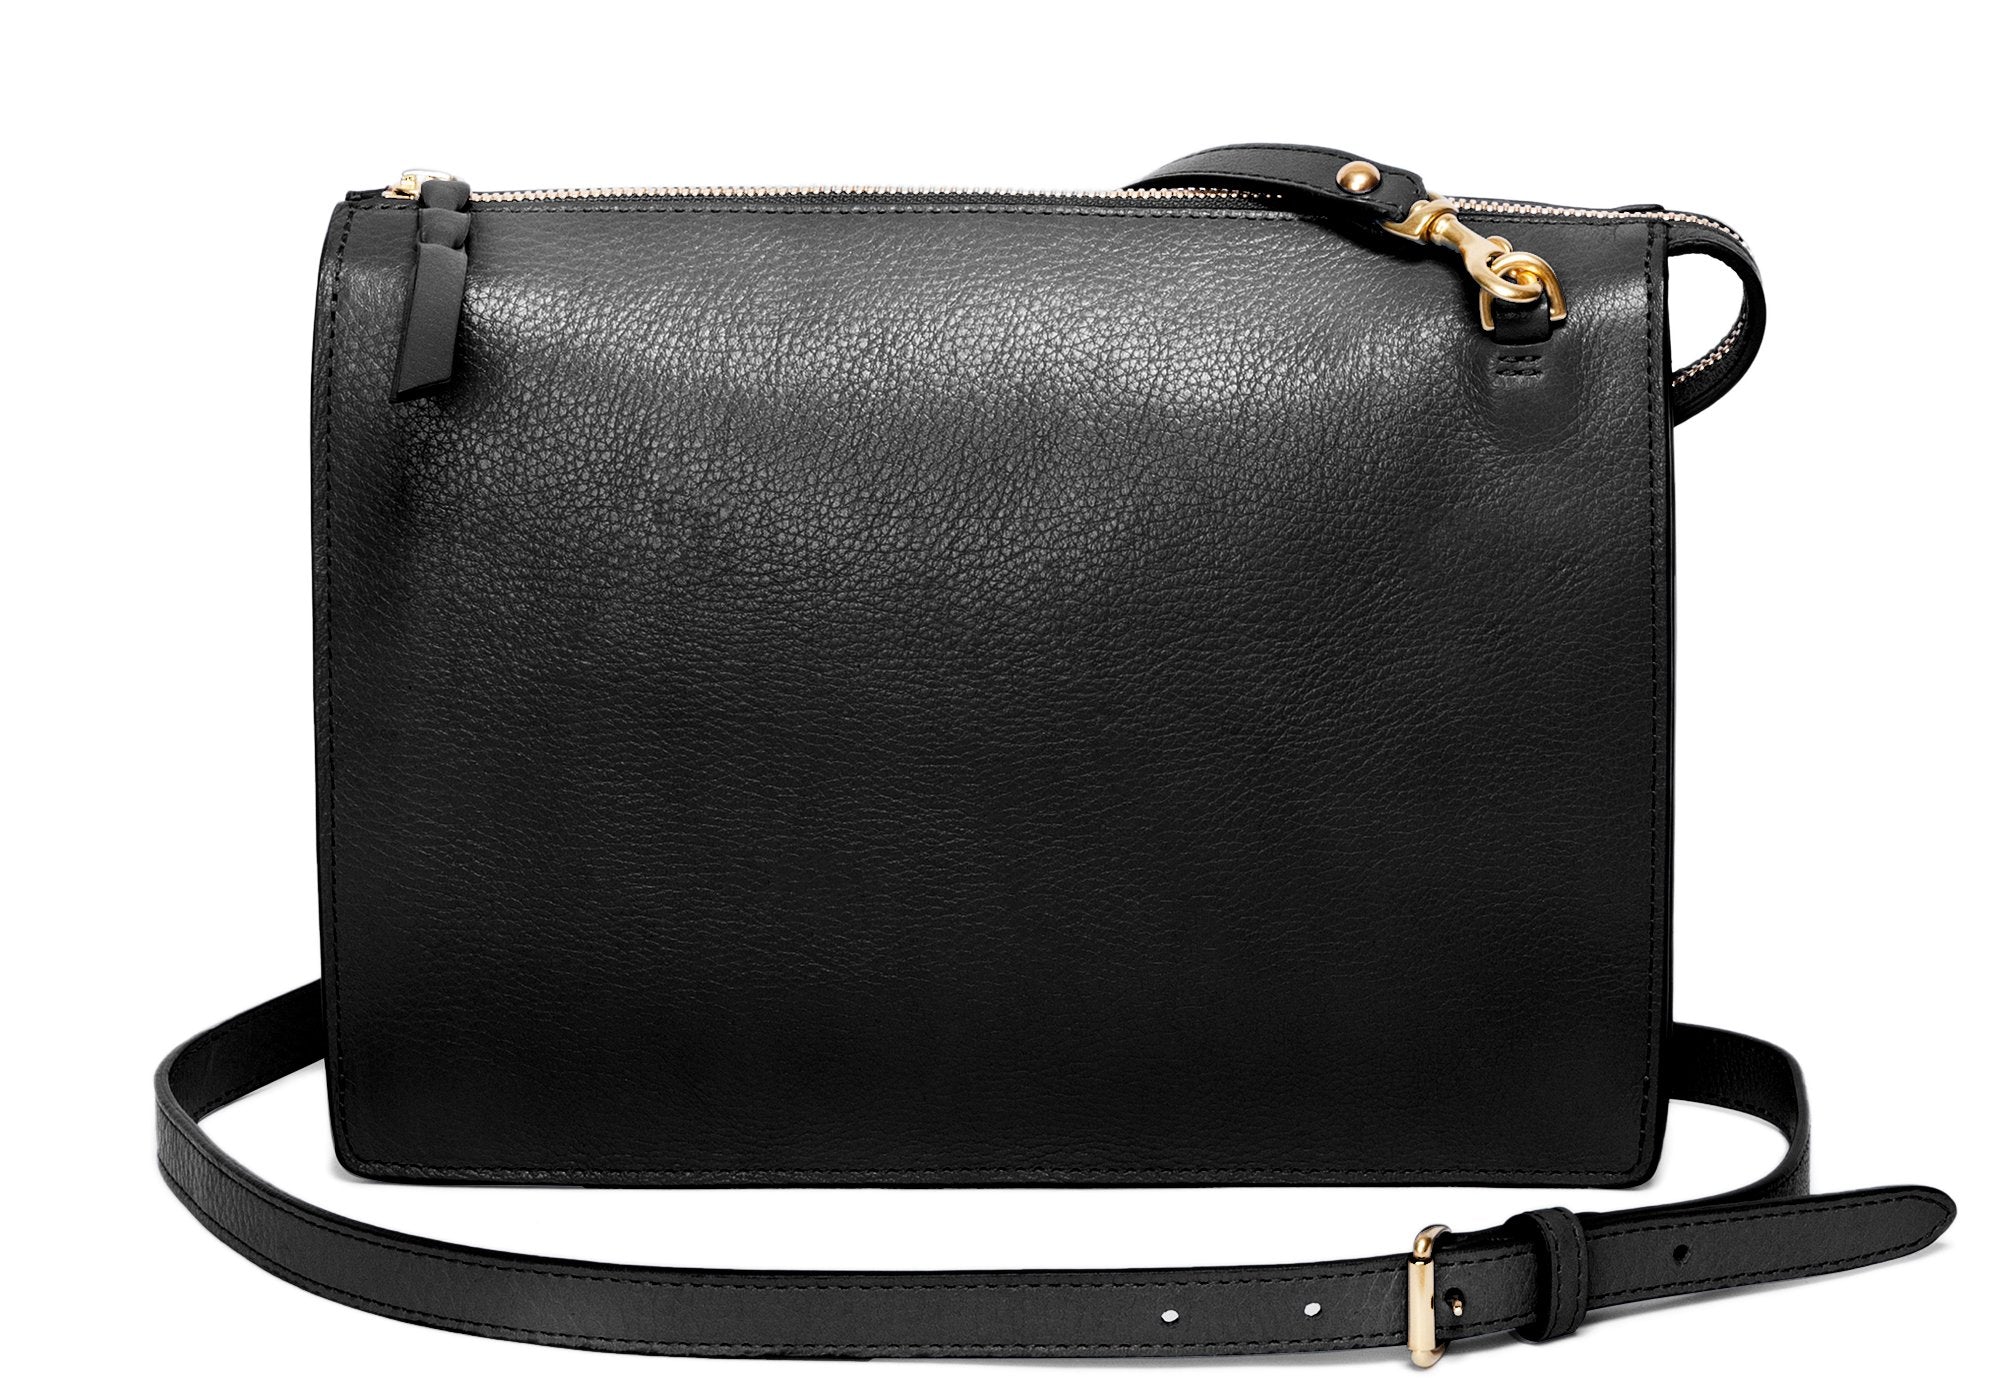 Vintage Lewis Handbag Black Patent Leather La Regale Lord & Taylor Lot  3 Purses